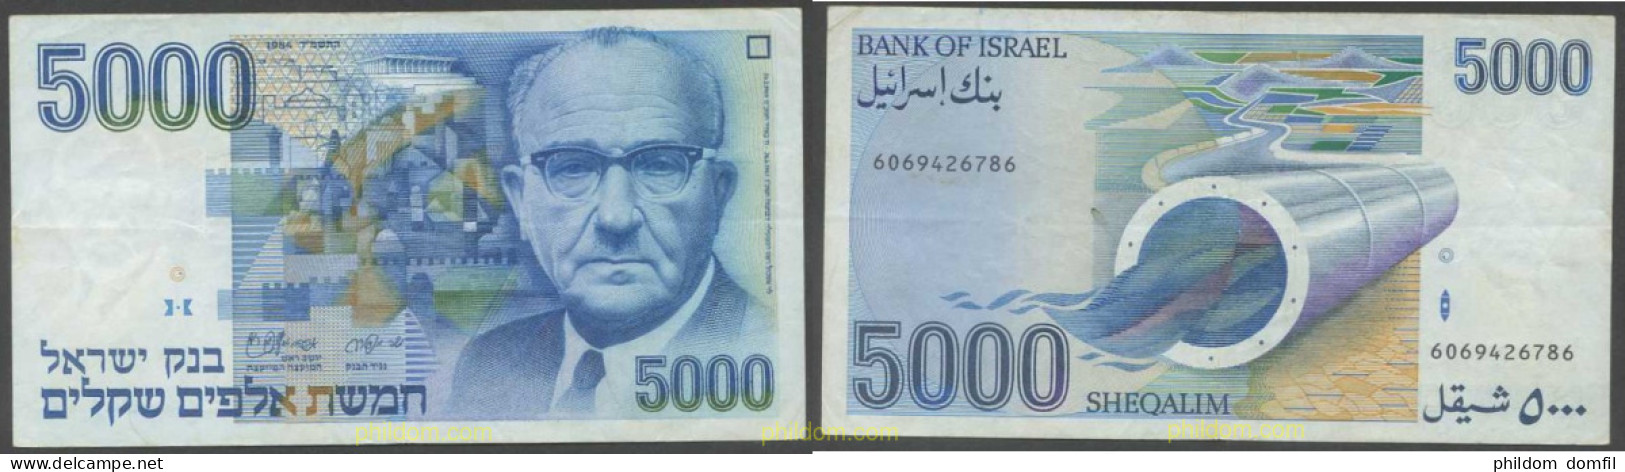 5398 ISRAEL 1984 ISRAEL 5000 SHEQALIM 1984 - Israel